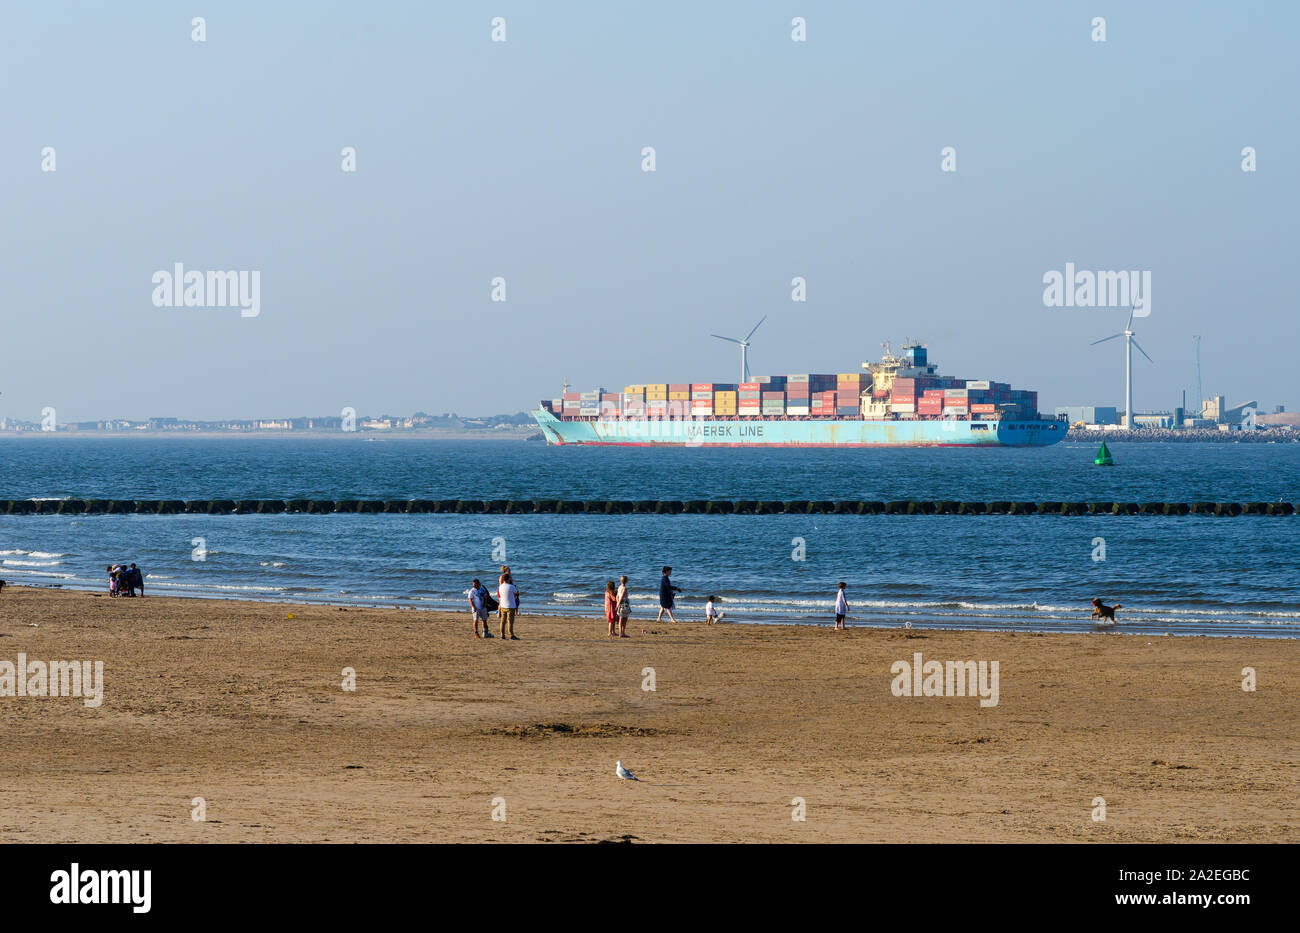 Menschen zu Fuß auf den Strand an der Mersey River. Cargo "Maersk Line' Schiff mit Containern beladen verlässt Liverpool Hafen. Stockfoto